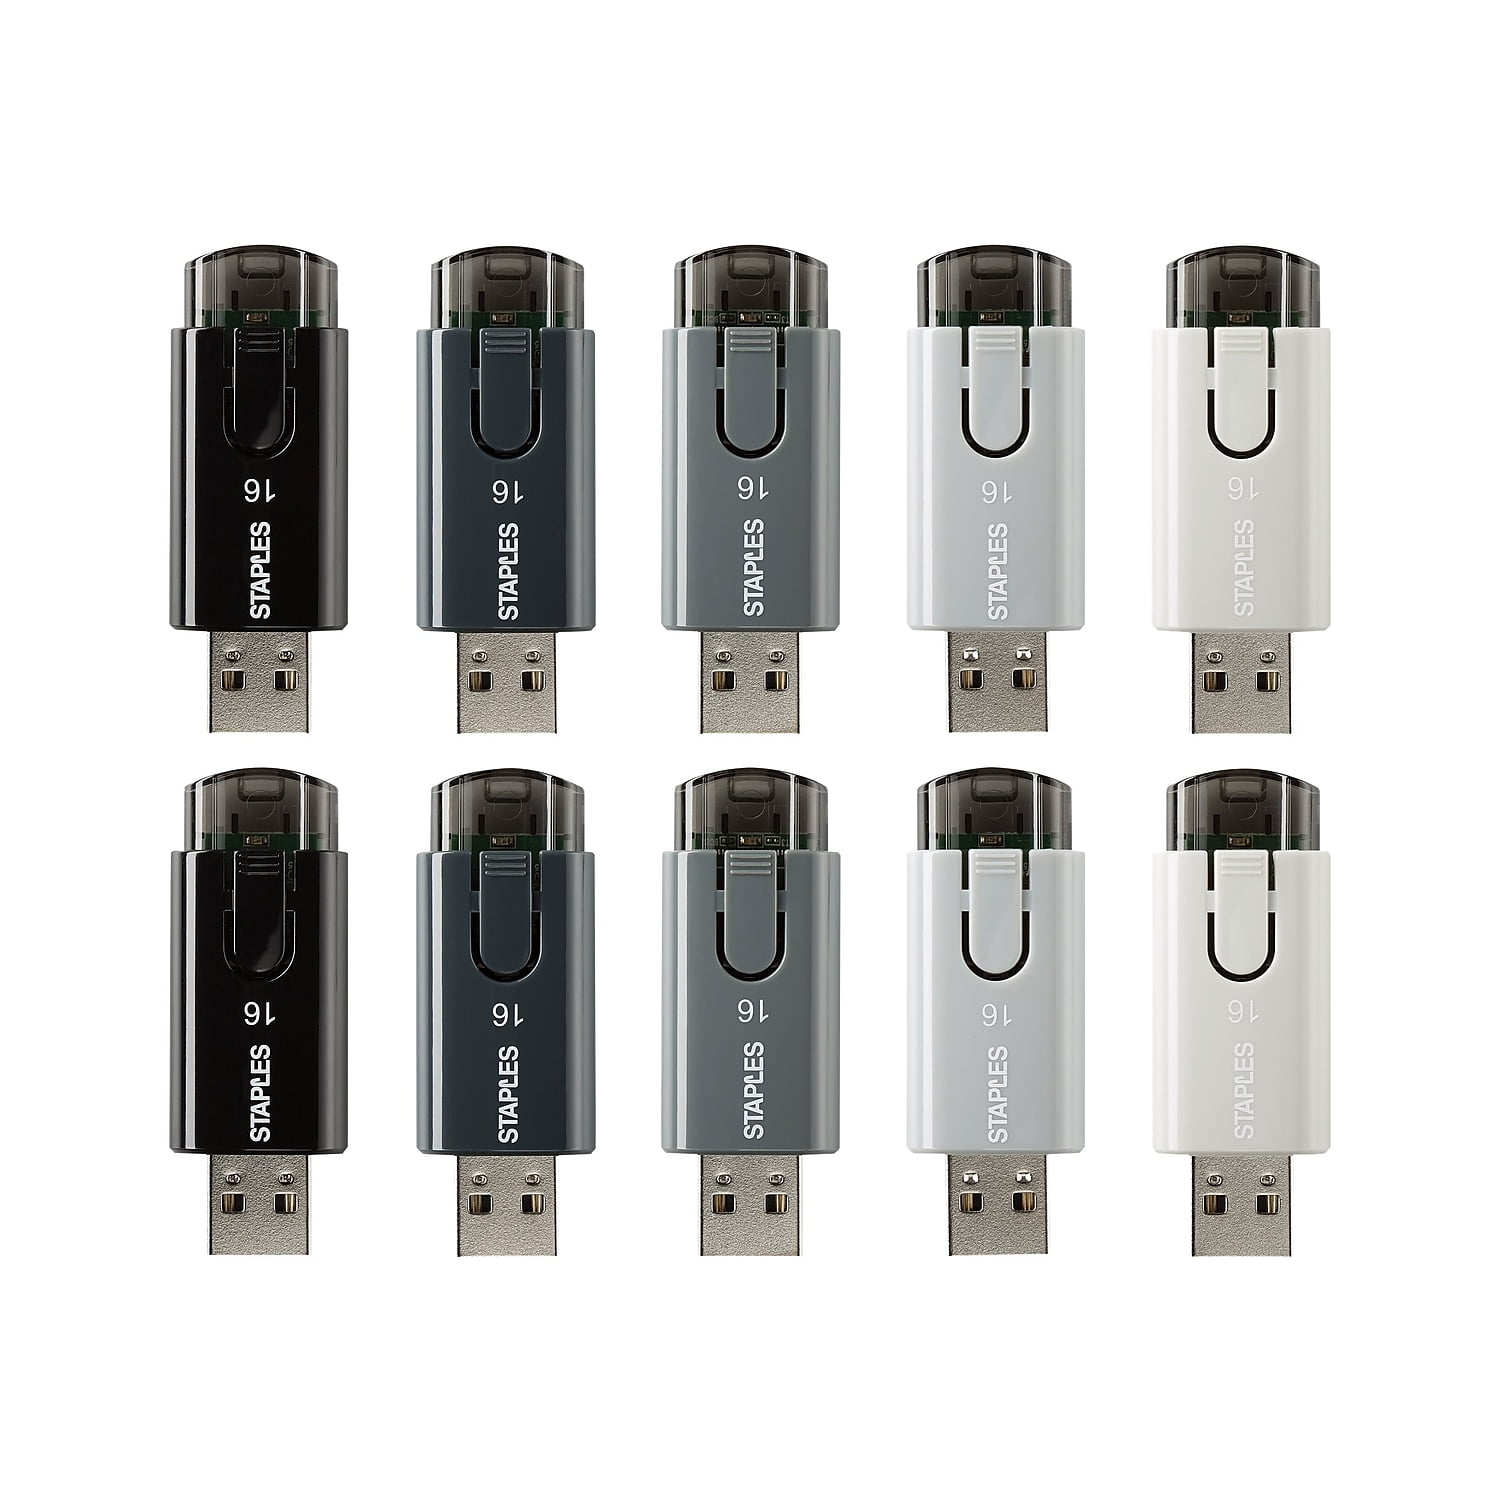 MR 931-2: USB Stick, USB 2.0, 16 GB, Combo Micro USB at reichelt